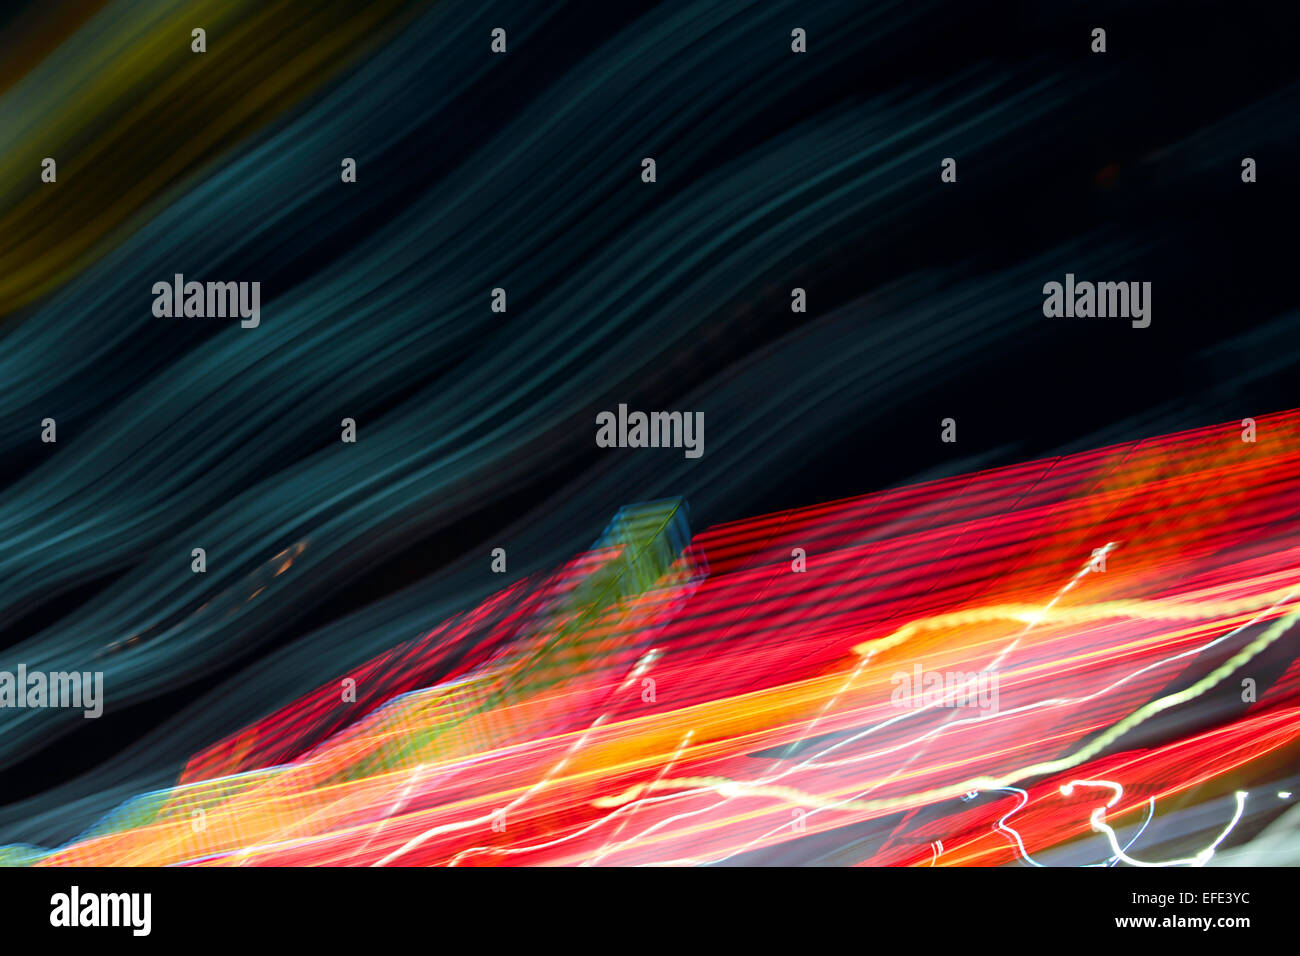 Imagen color de fondo abstracto rayas y manchas. Foto de stock